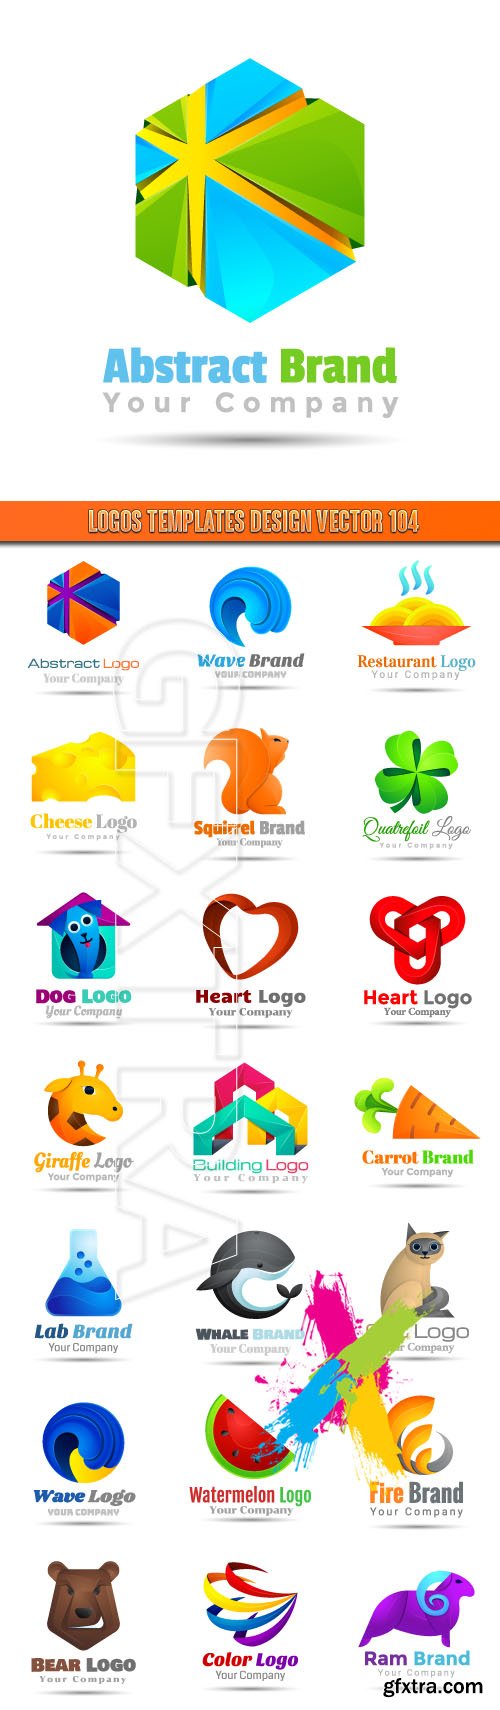 Logos Templates Design Vector 104